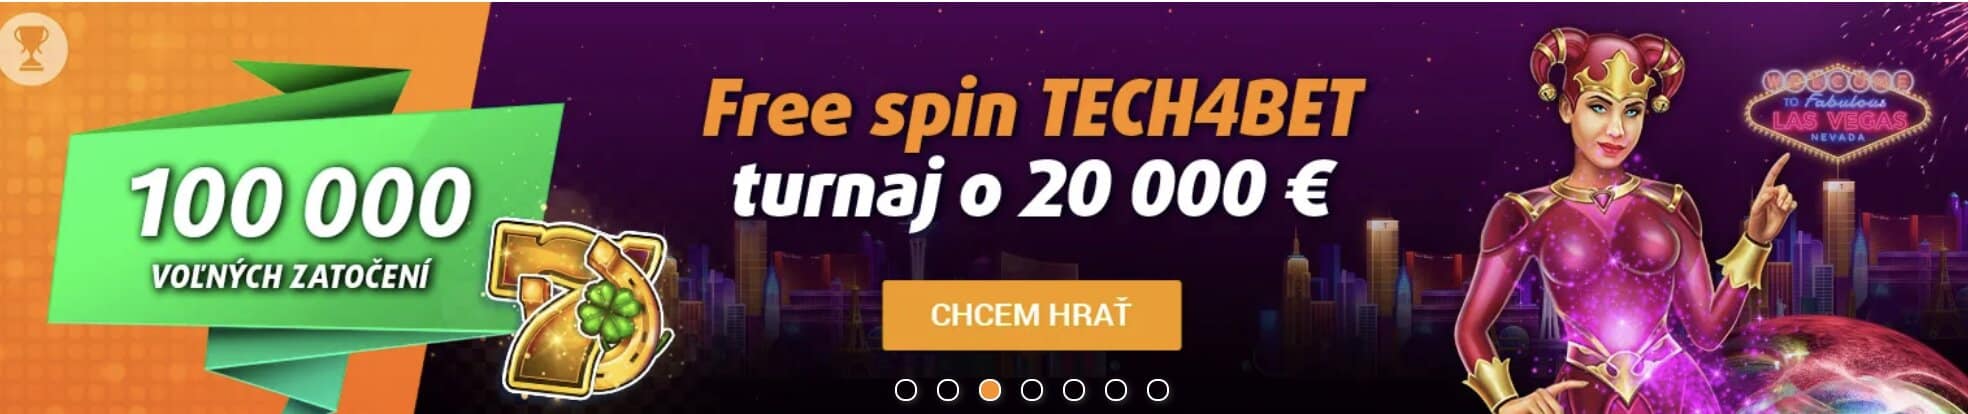 Free Spin Turnaj o 20 000€